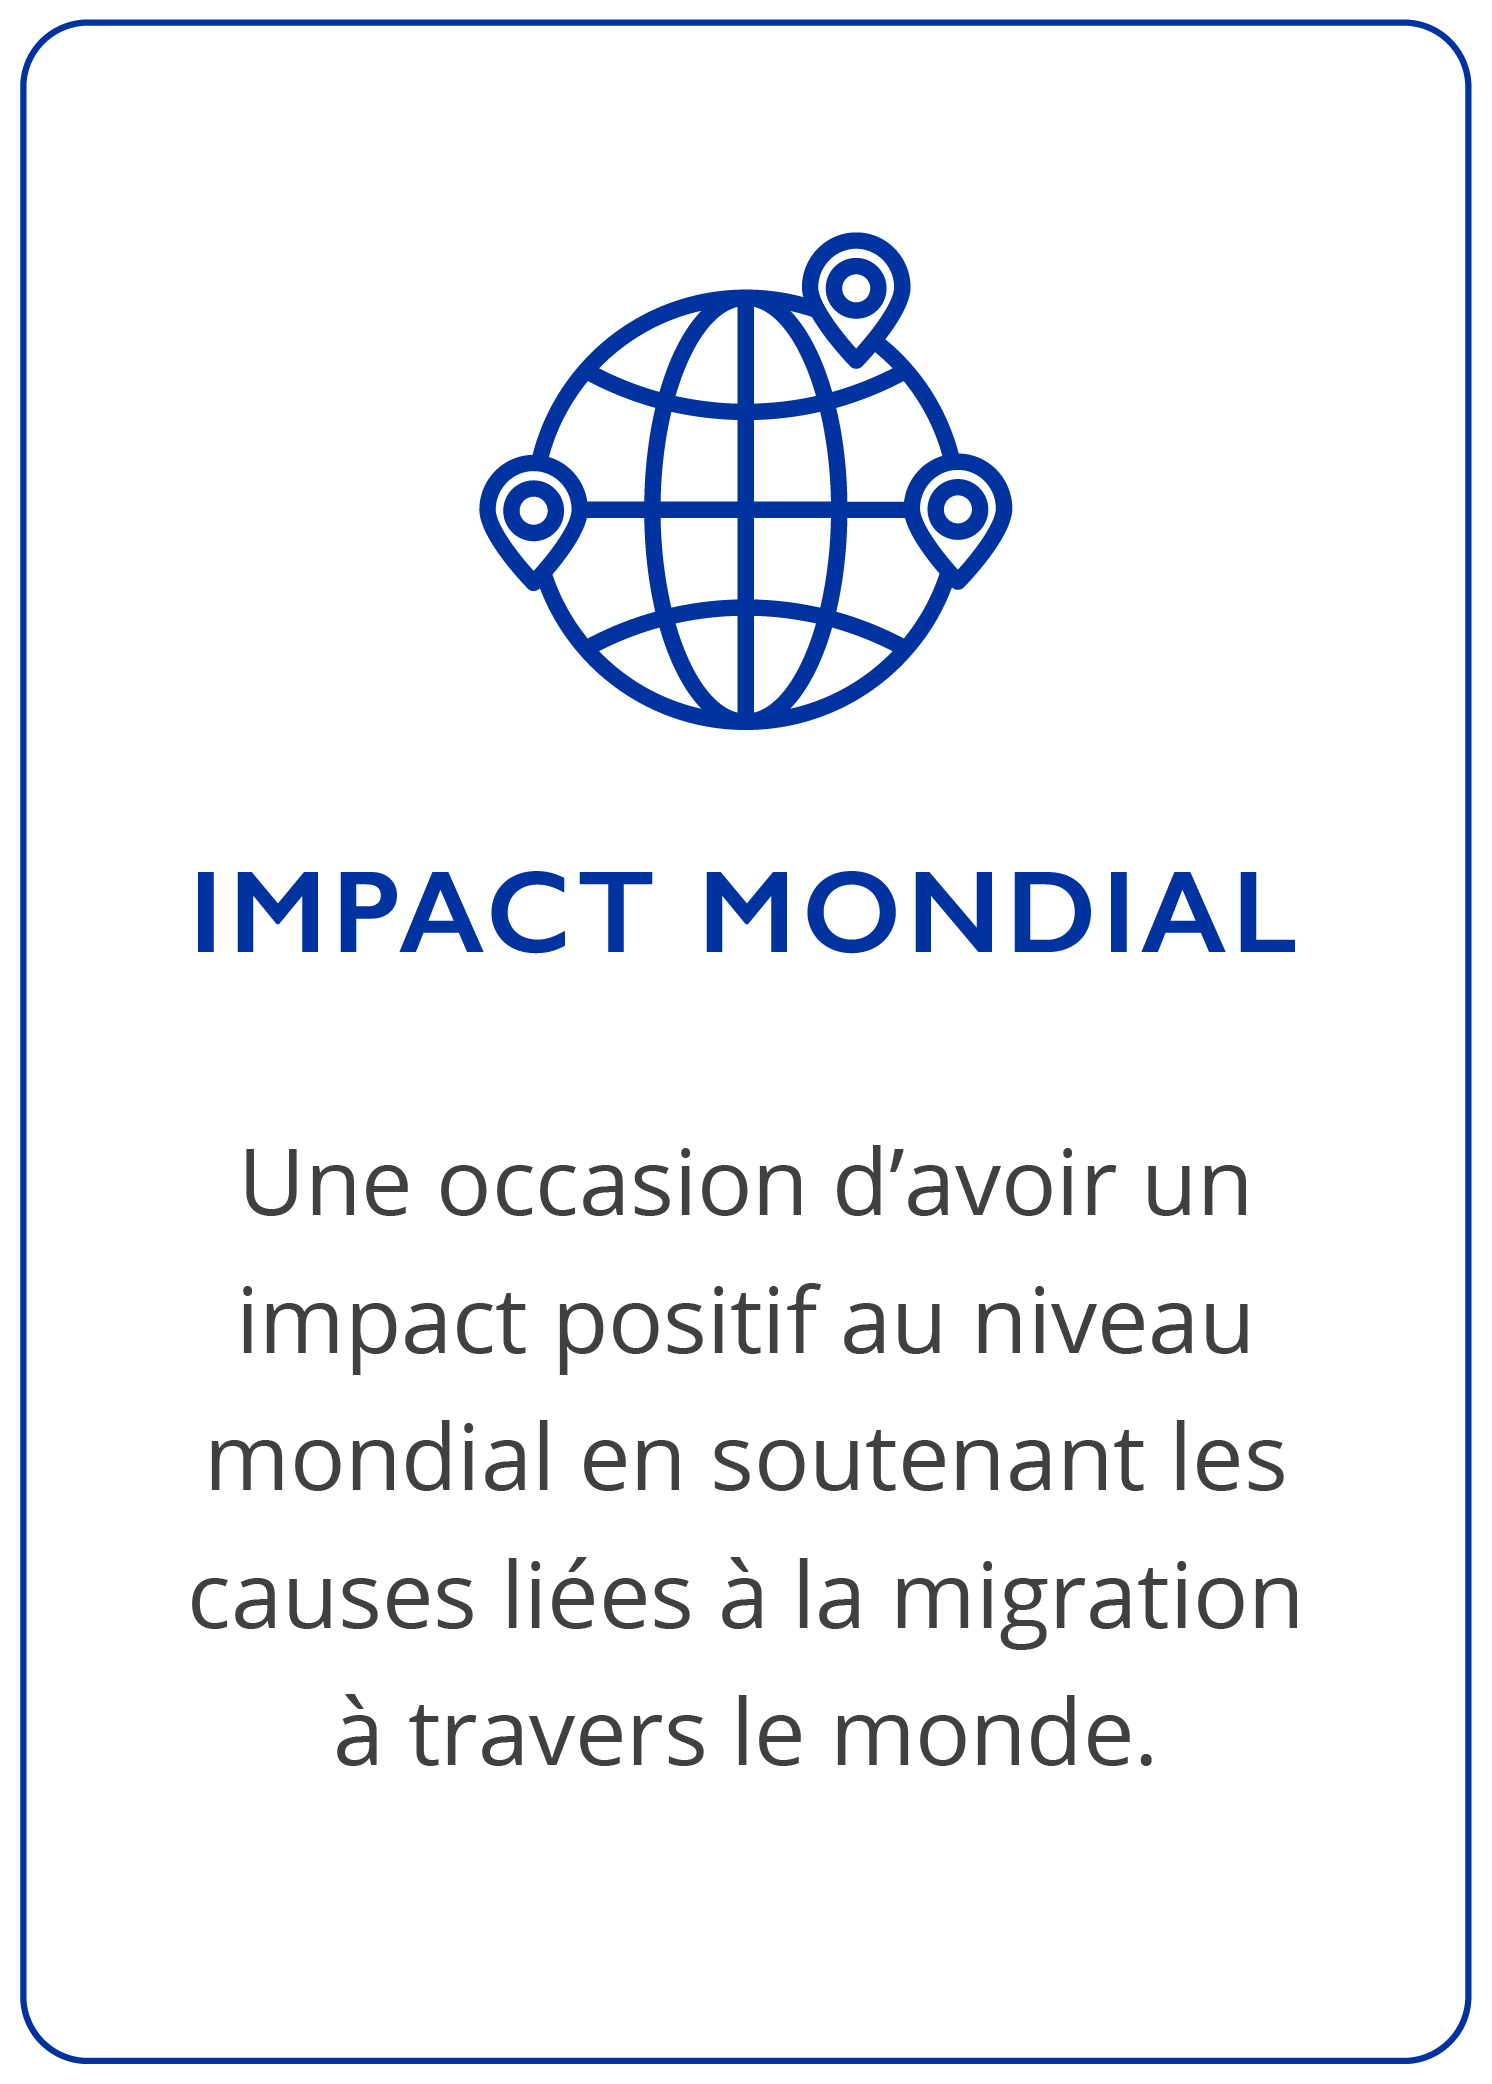 global impact